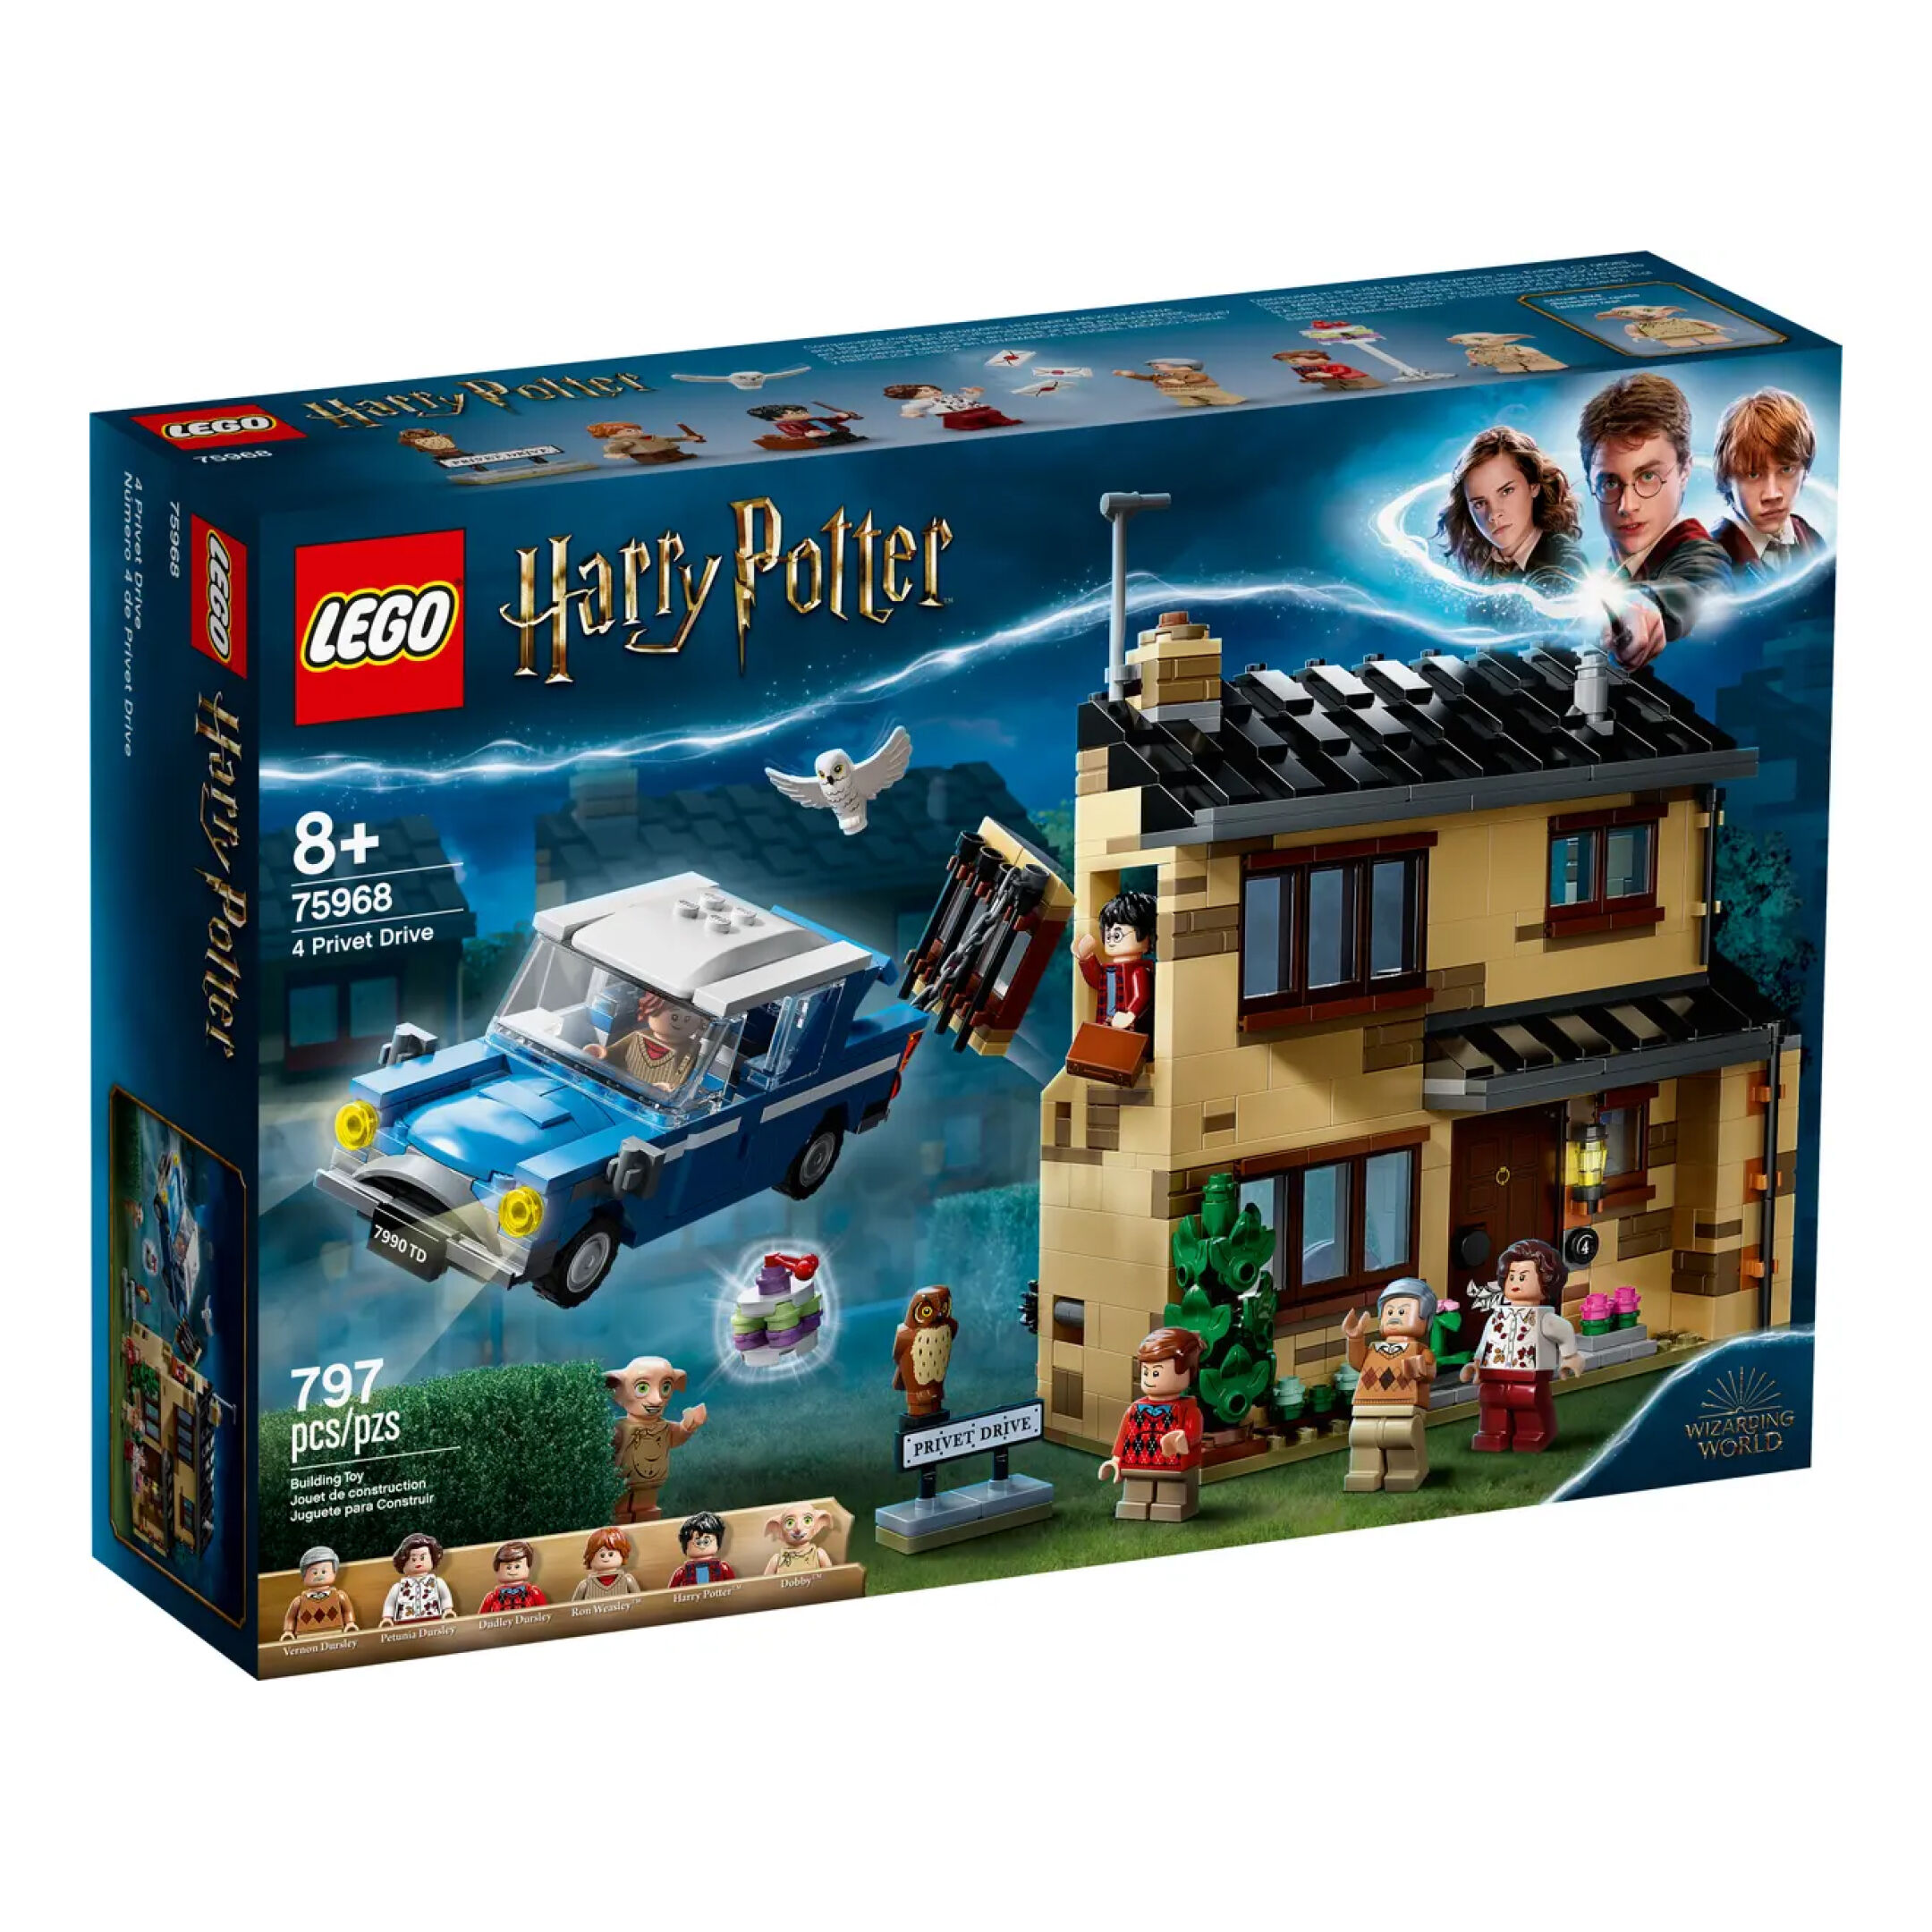 Ligusterweg 4 (75968) - Lego Harry Potter